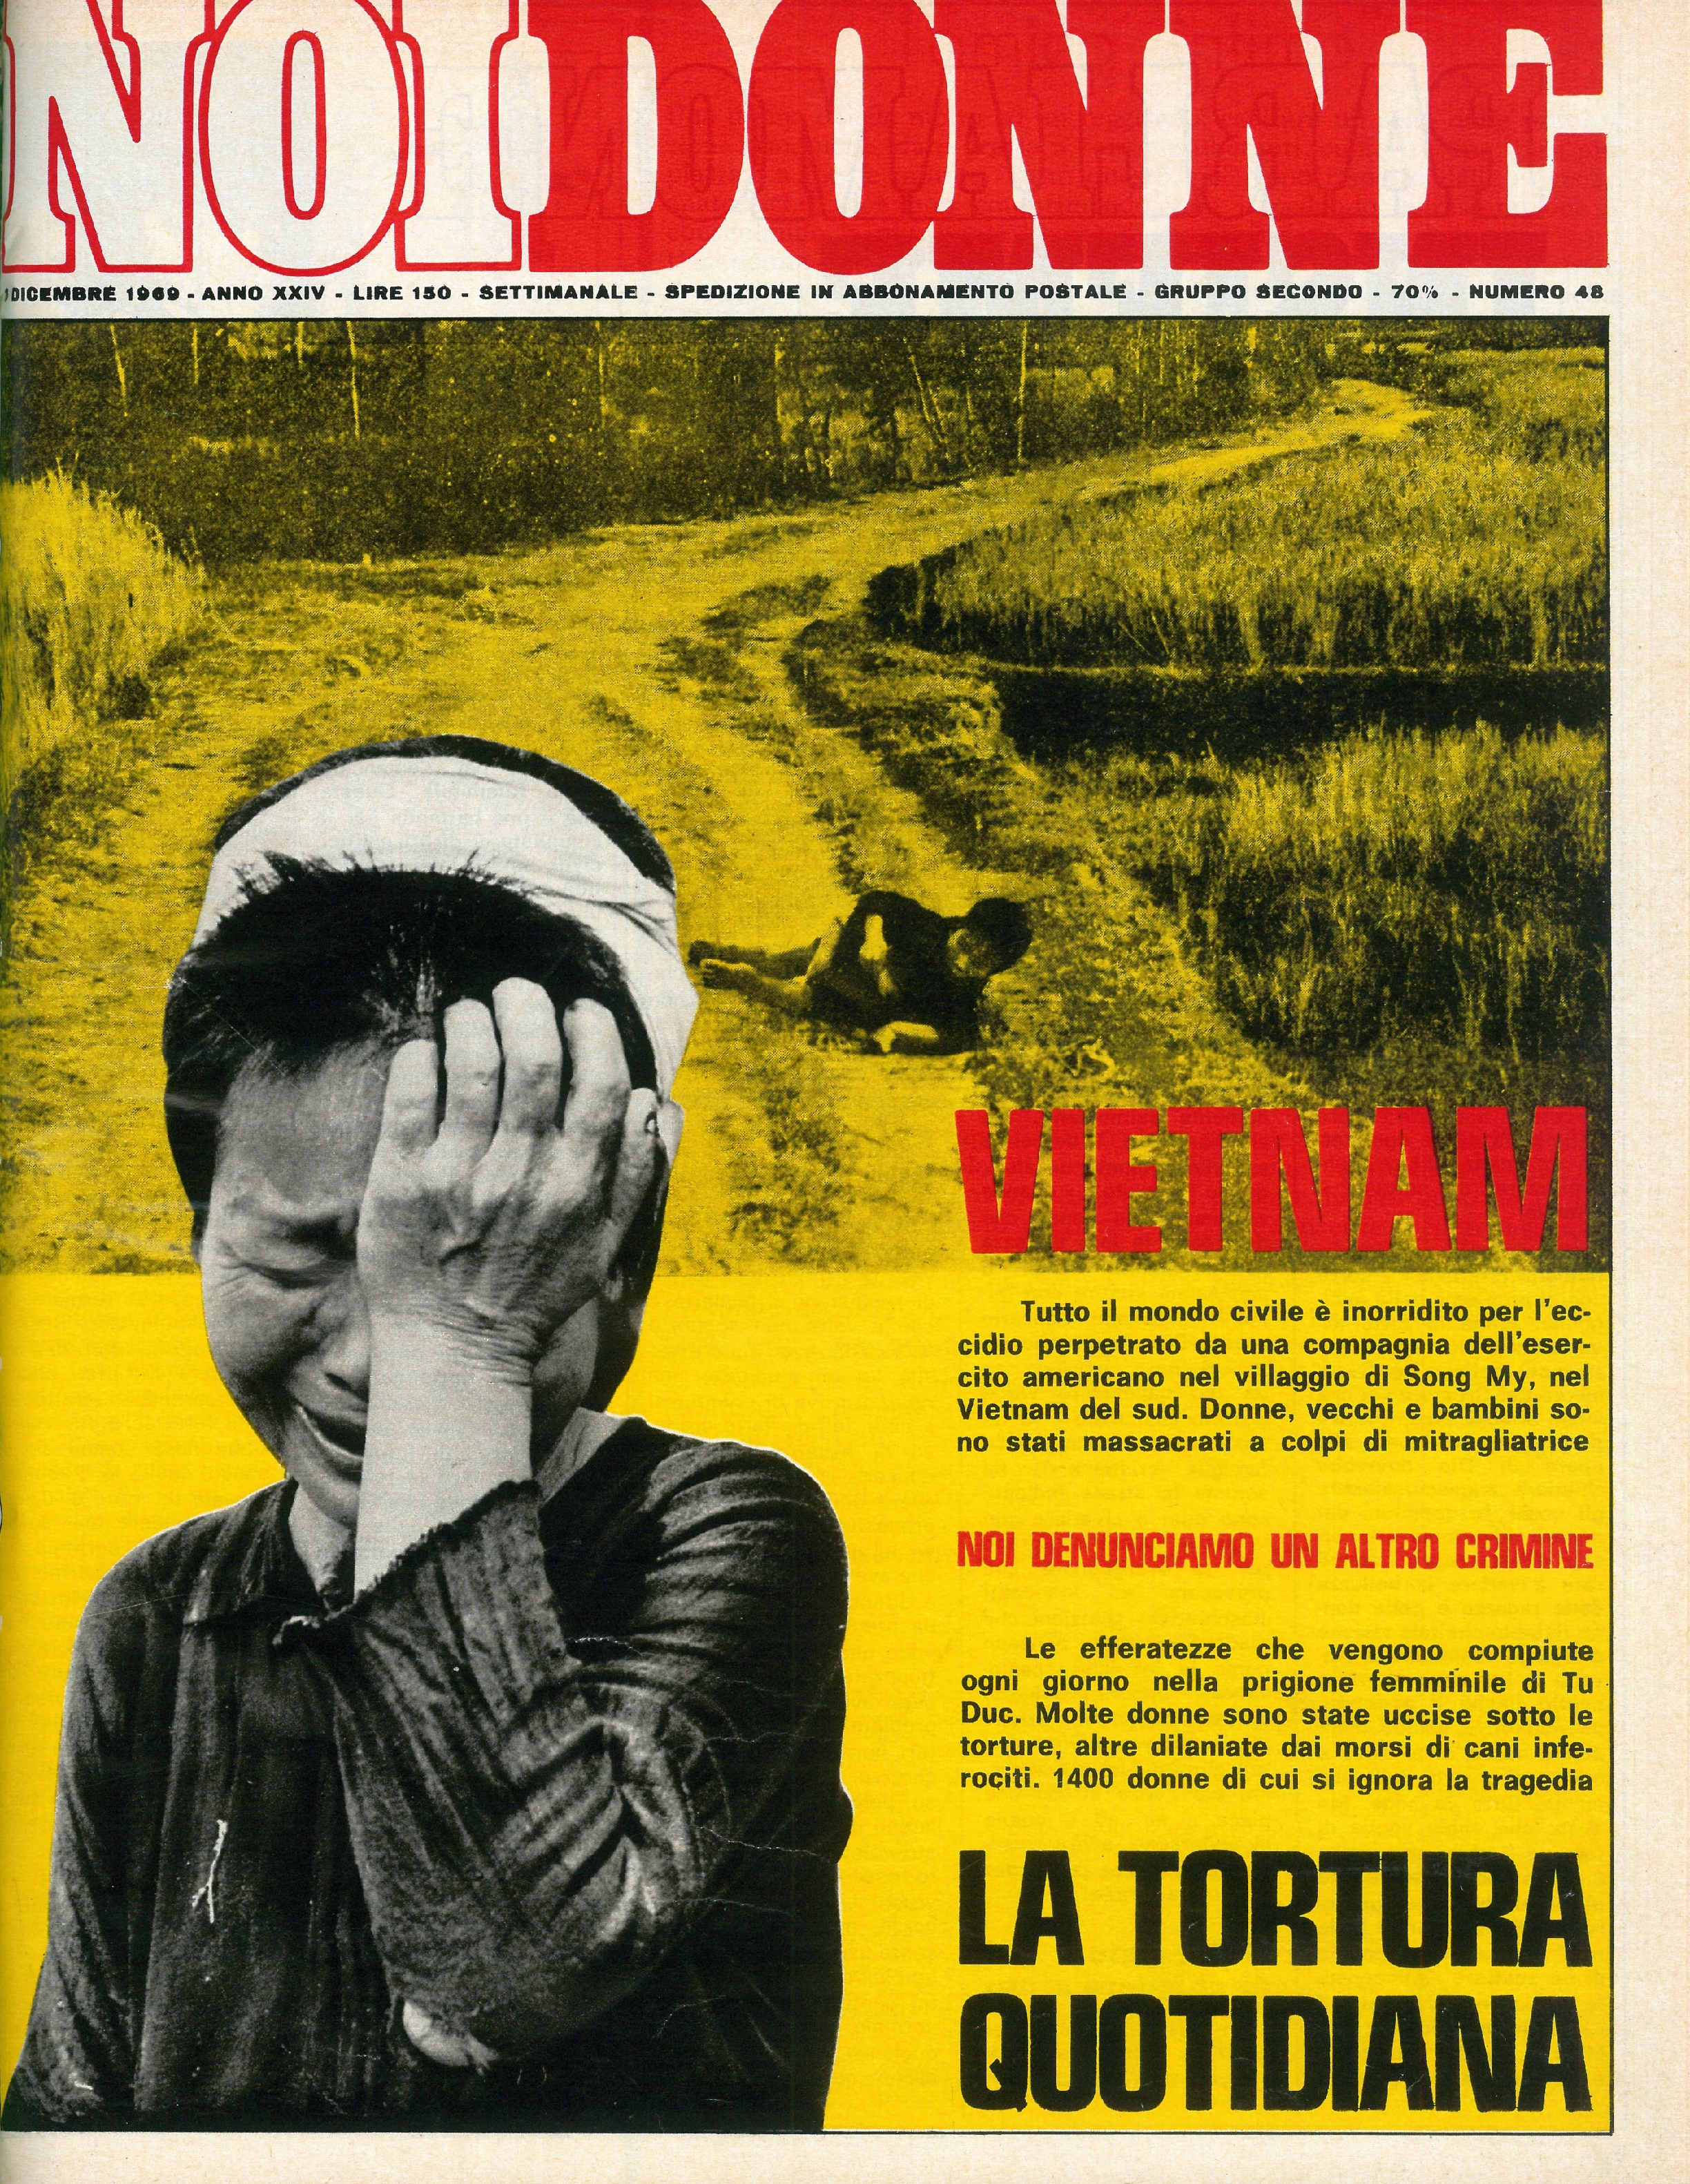 Foto: Vietnam la tortura quotidiana